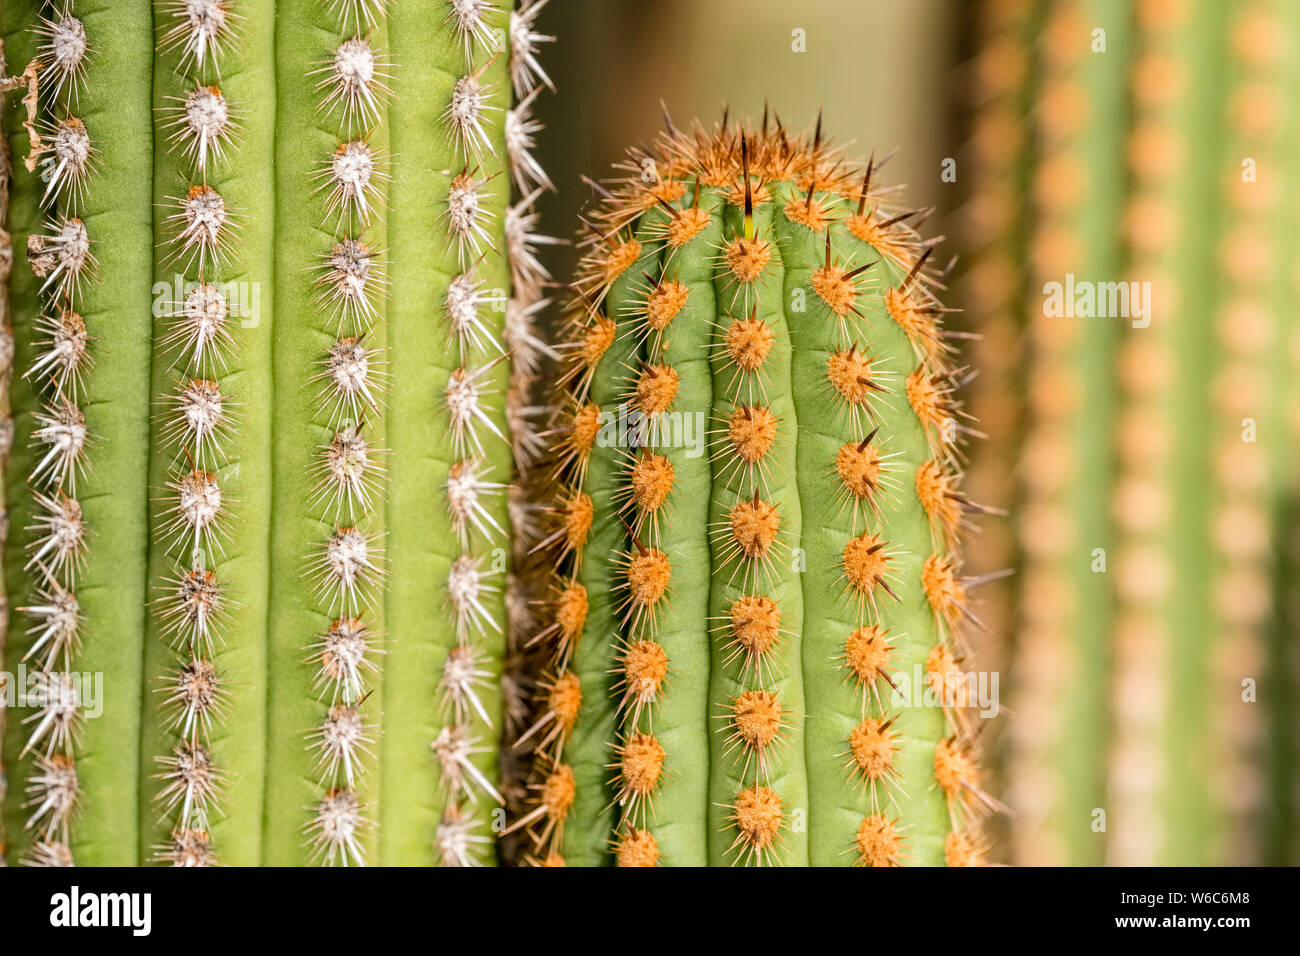 Thorny trunk of a Cactus (Haageocereus multangularis) Stock Photo